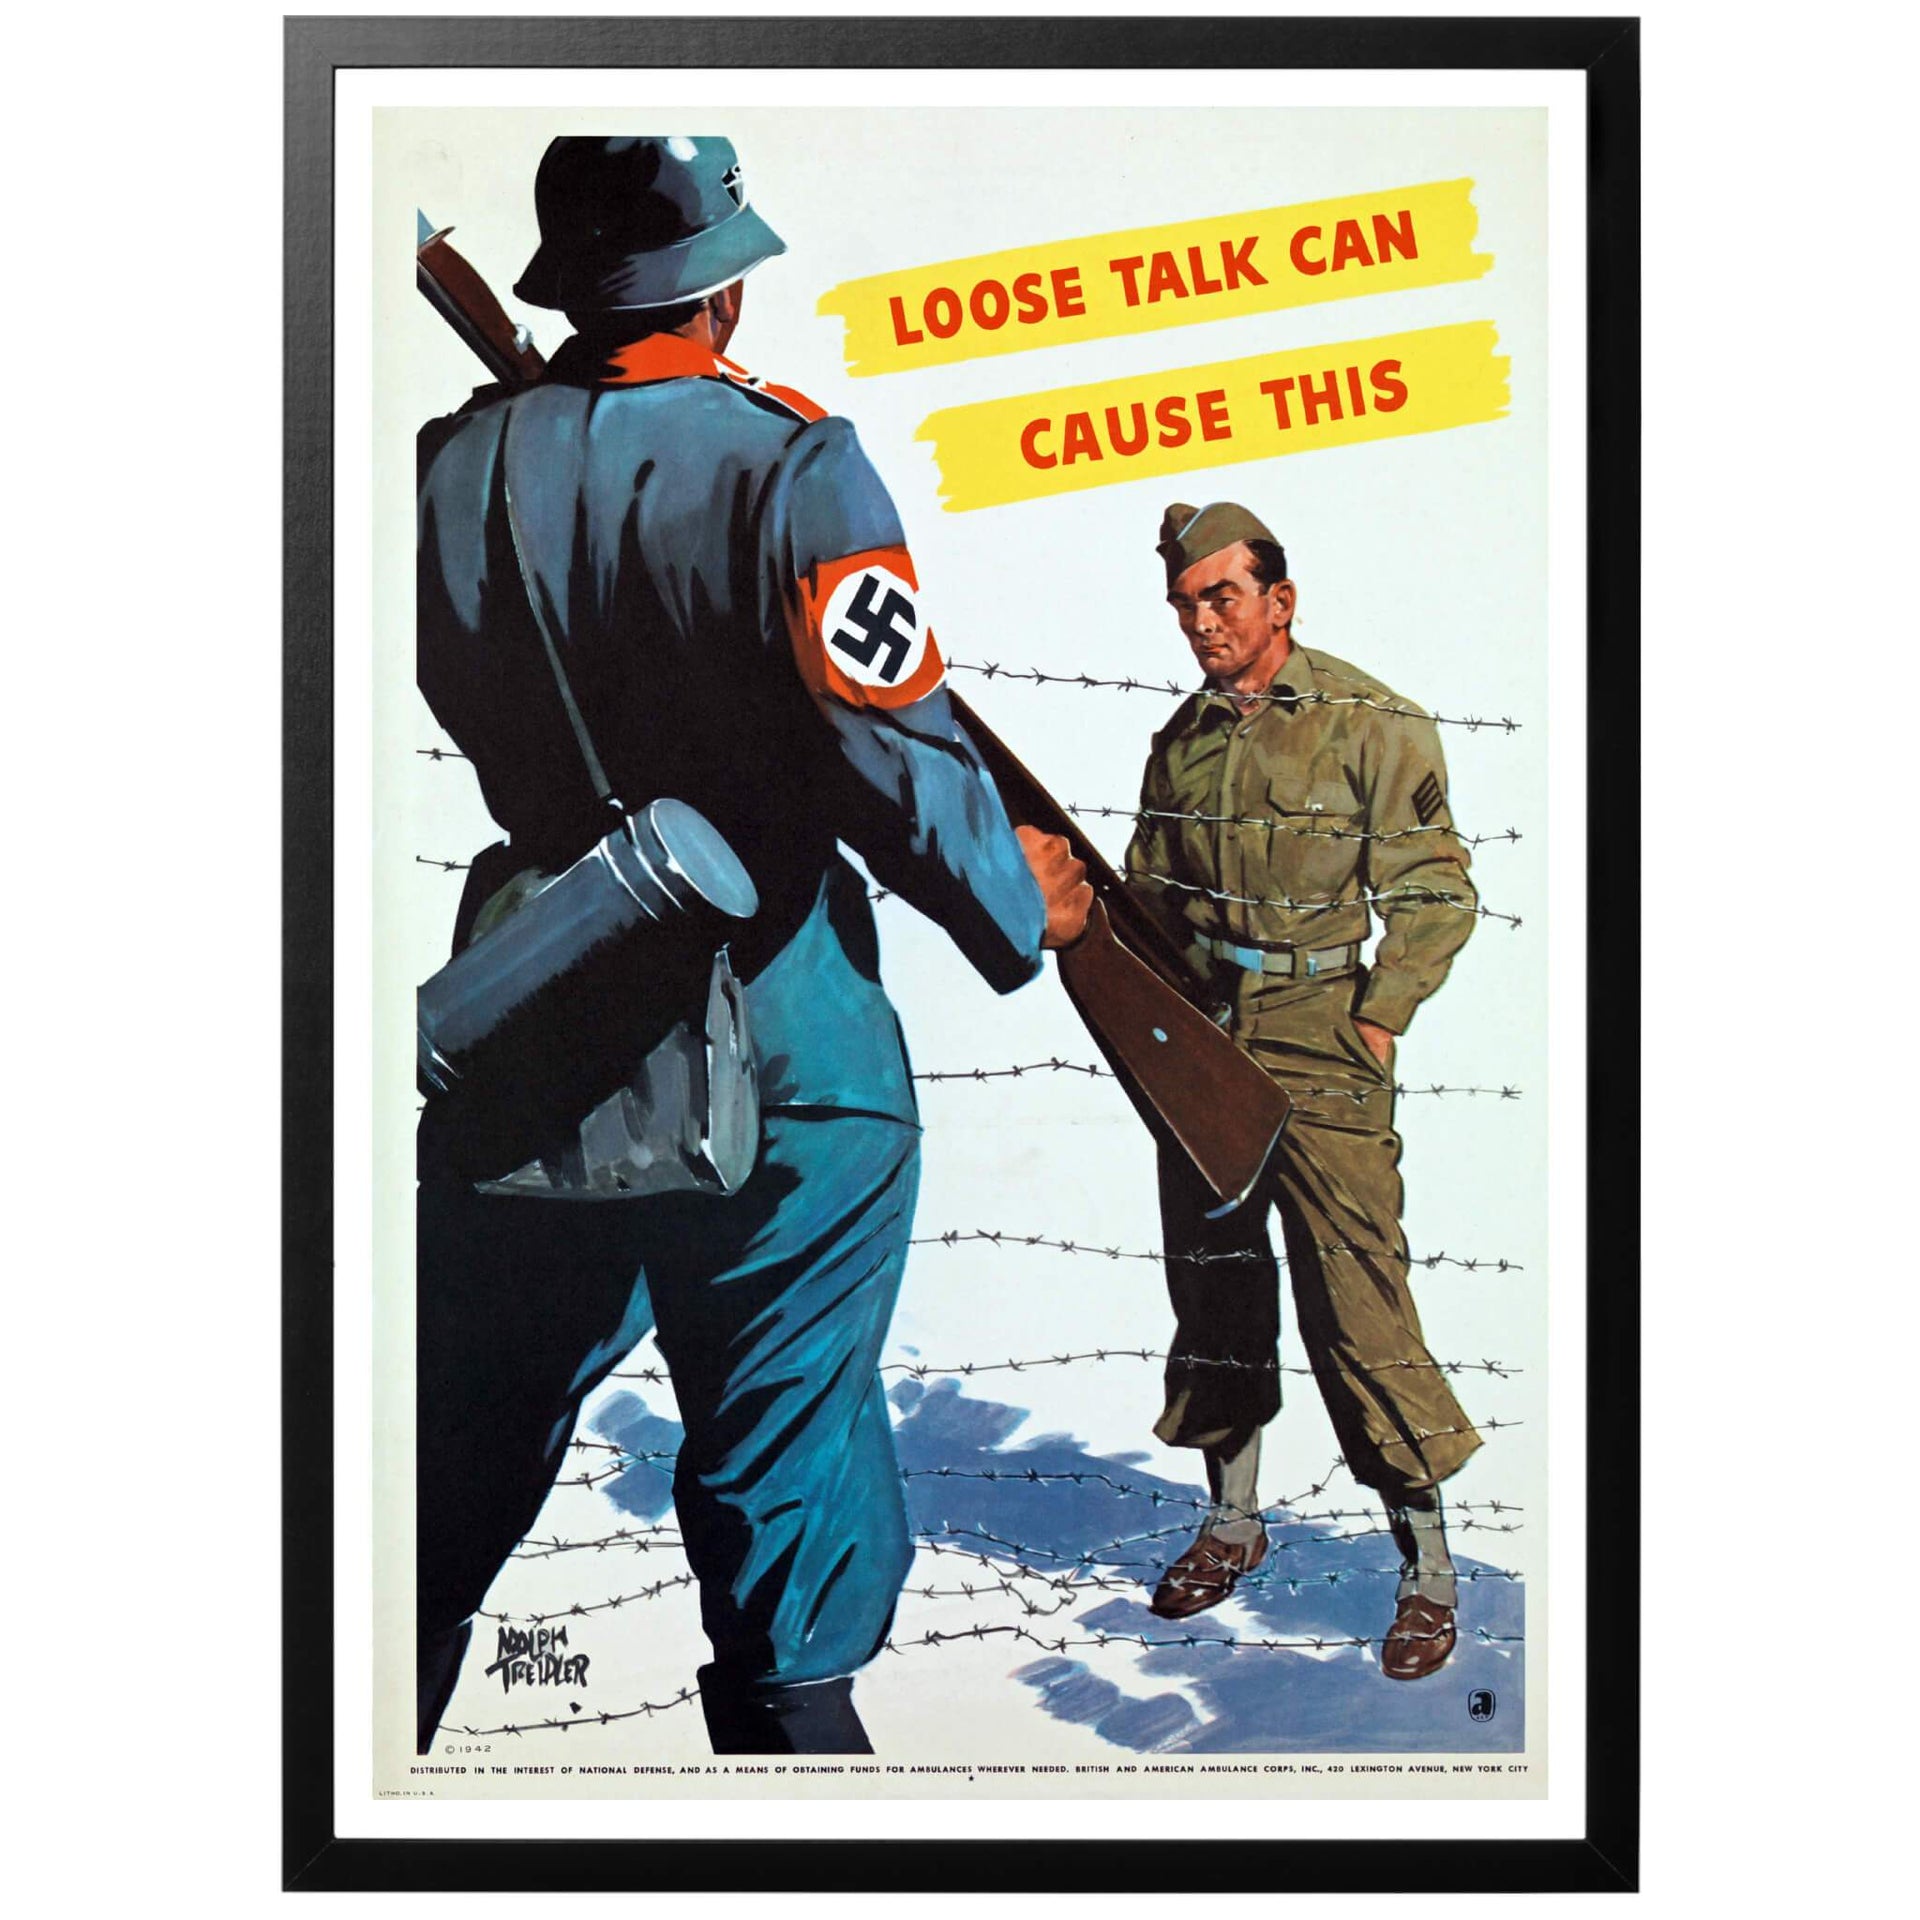 Loose talk can cause this - "Vårdslöst tal kan orsaka detta Amerikansk WWII affisch från 1942. Ännu en "håll tyst"-affisch av mästaren Adolph Treidler. Den tyska soldaten, hakkorset och den snedställda texten såg till att fånga uppmärksamheten hos den amerikanska befolkningen. 